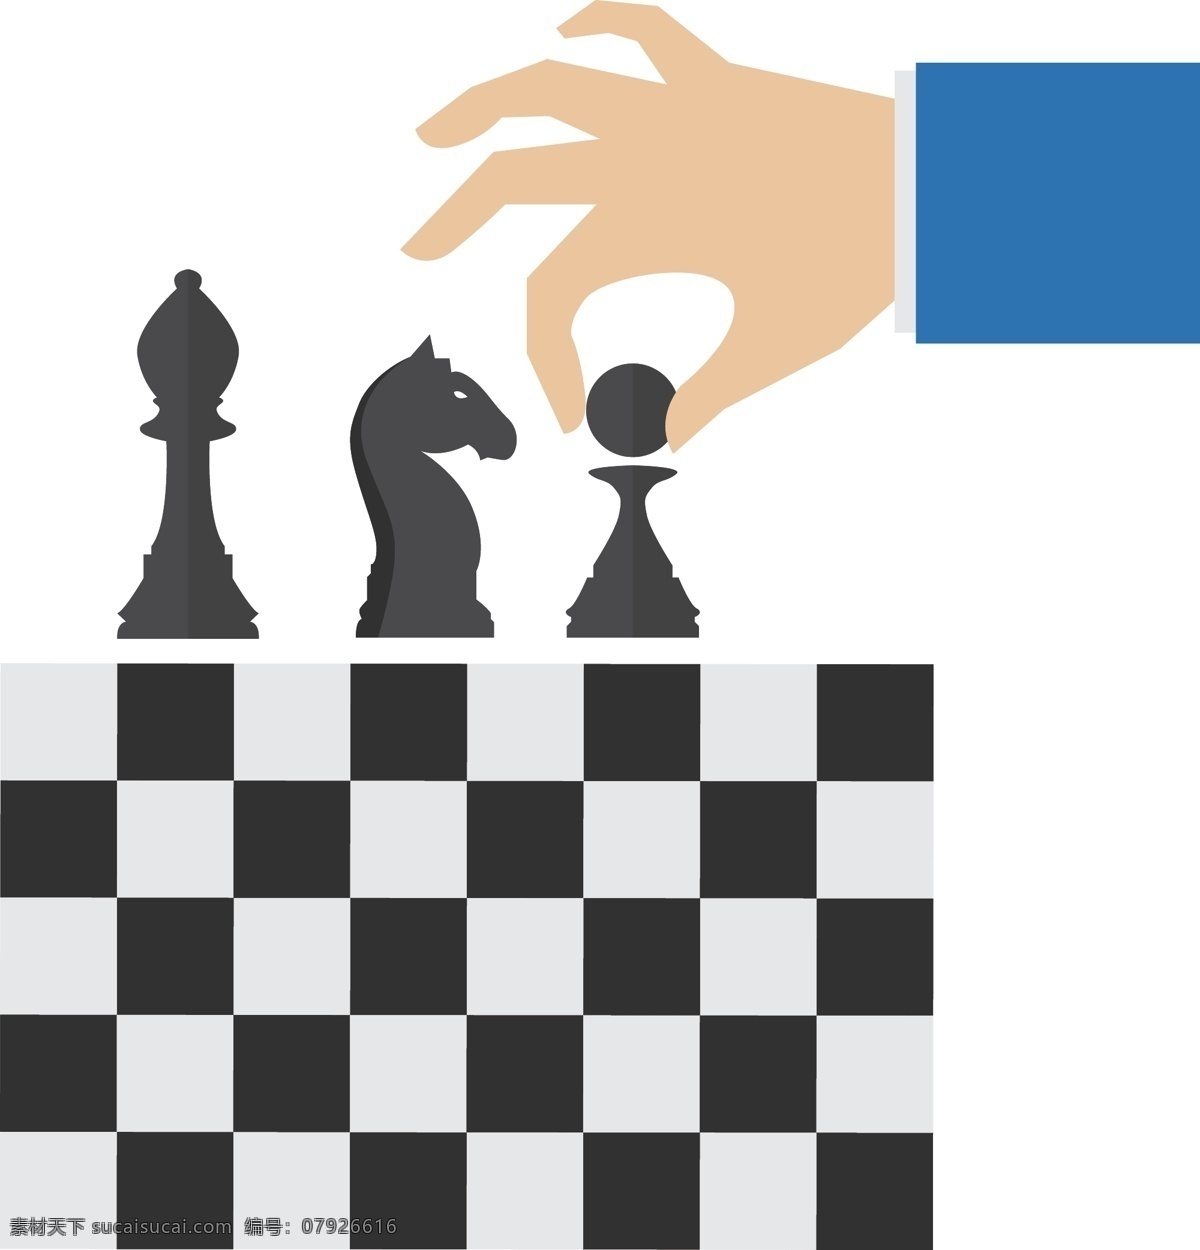 国际象棋棋盘 棋盘 国际象棋 下棋 黑白棋 象棋 生活百科 休闲娱乐